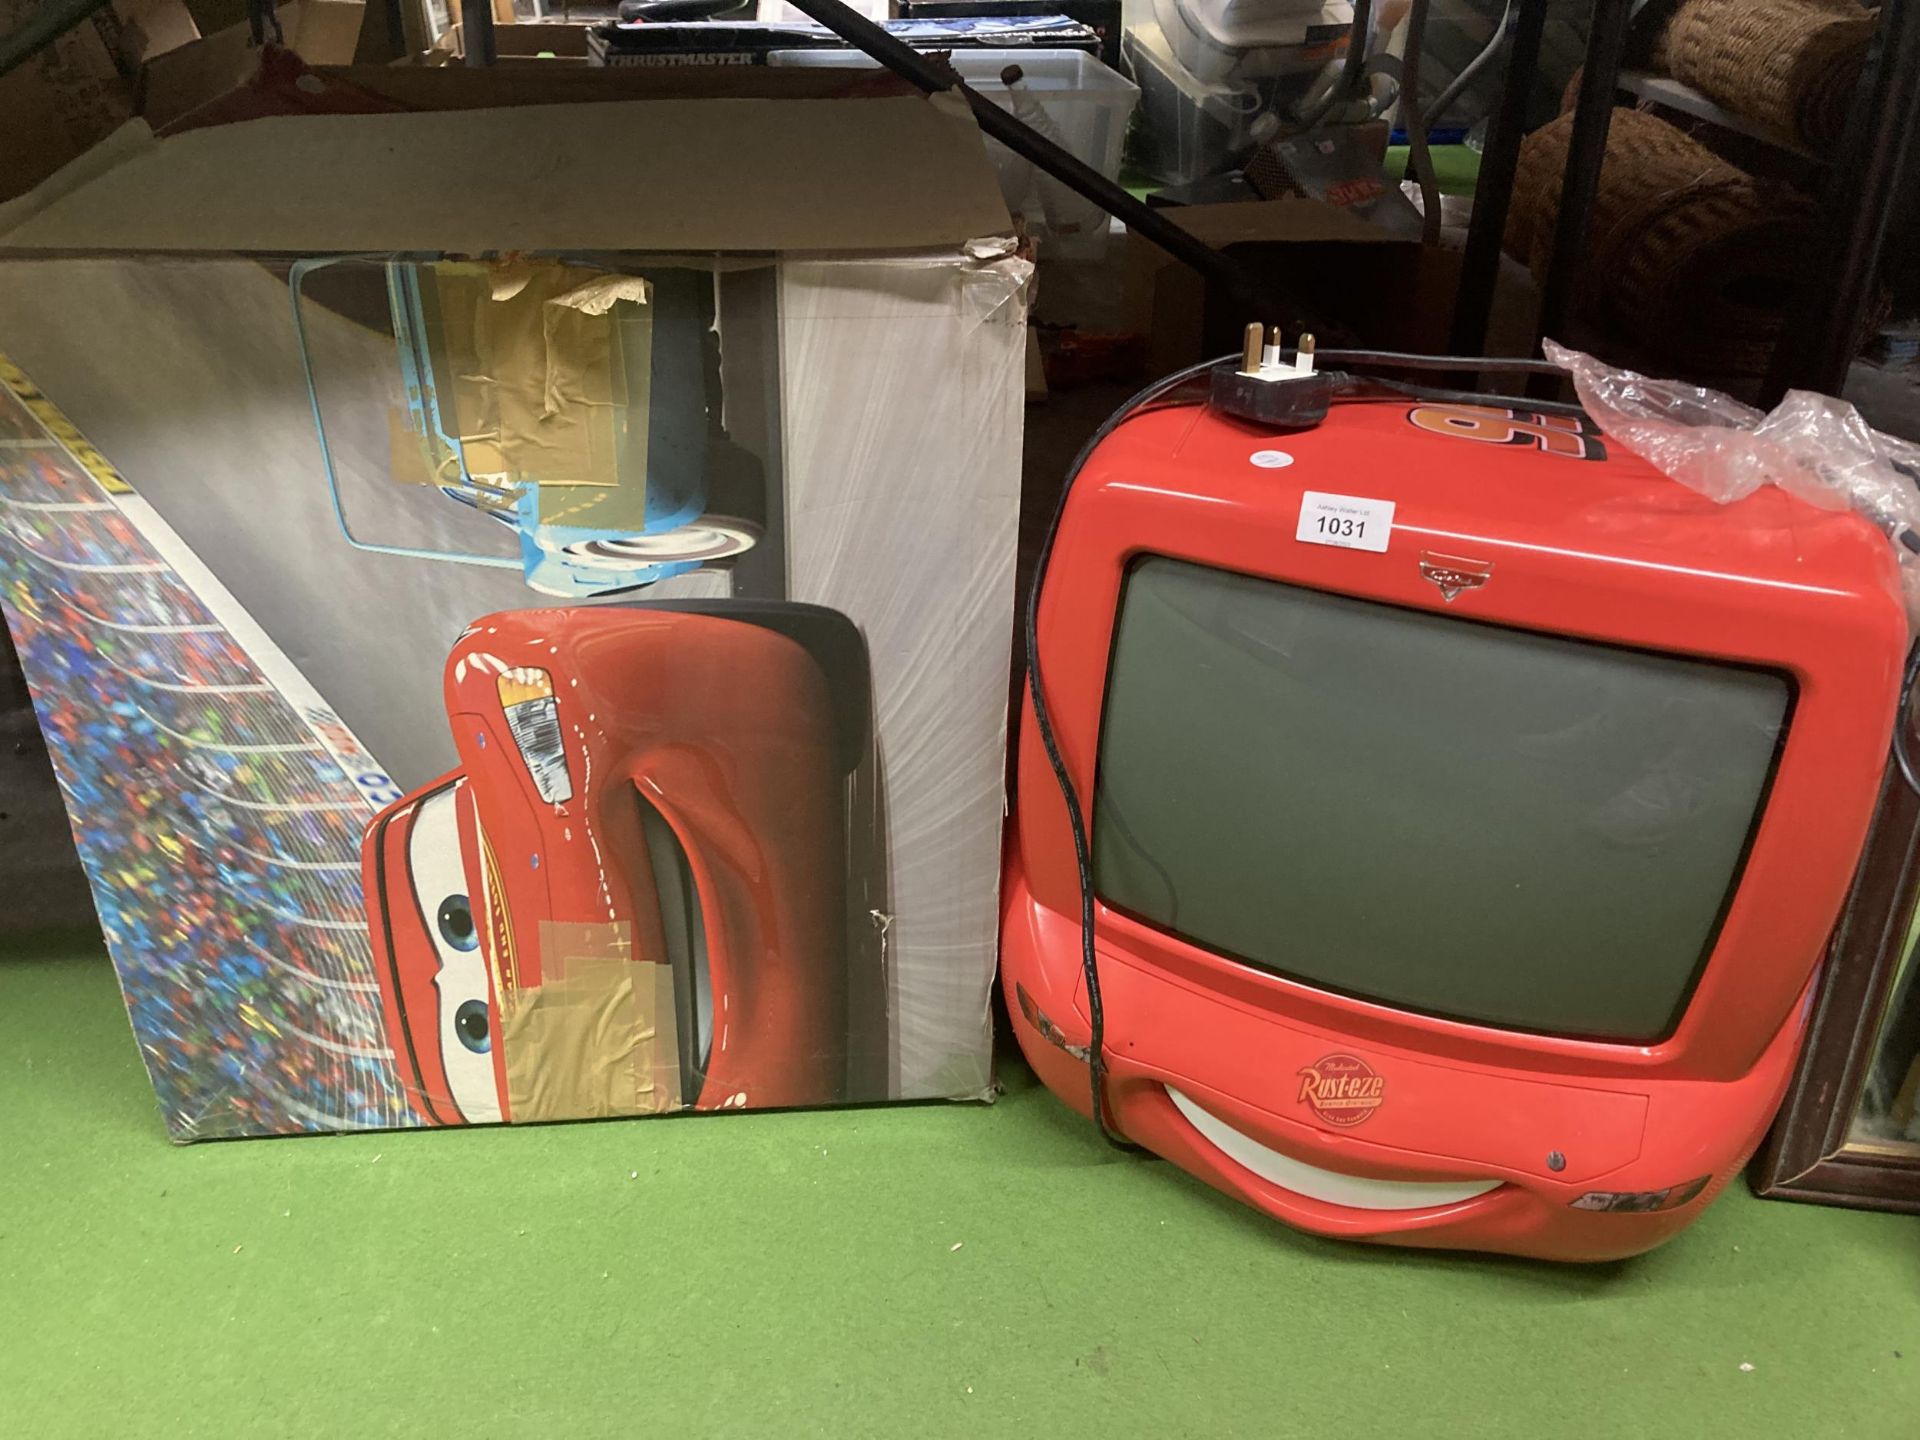 A 'CARS' MOVIE RED TV SET IN ORIGINAL BOX